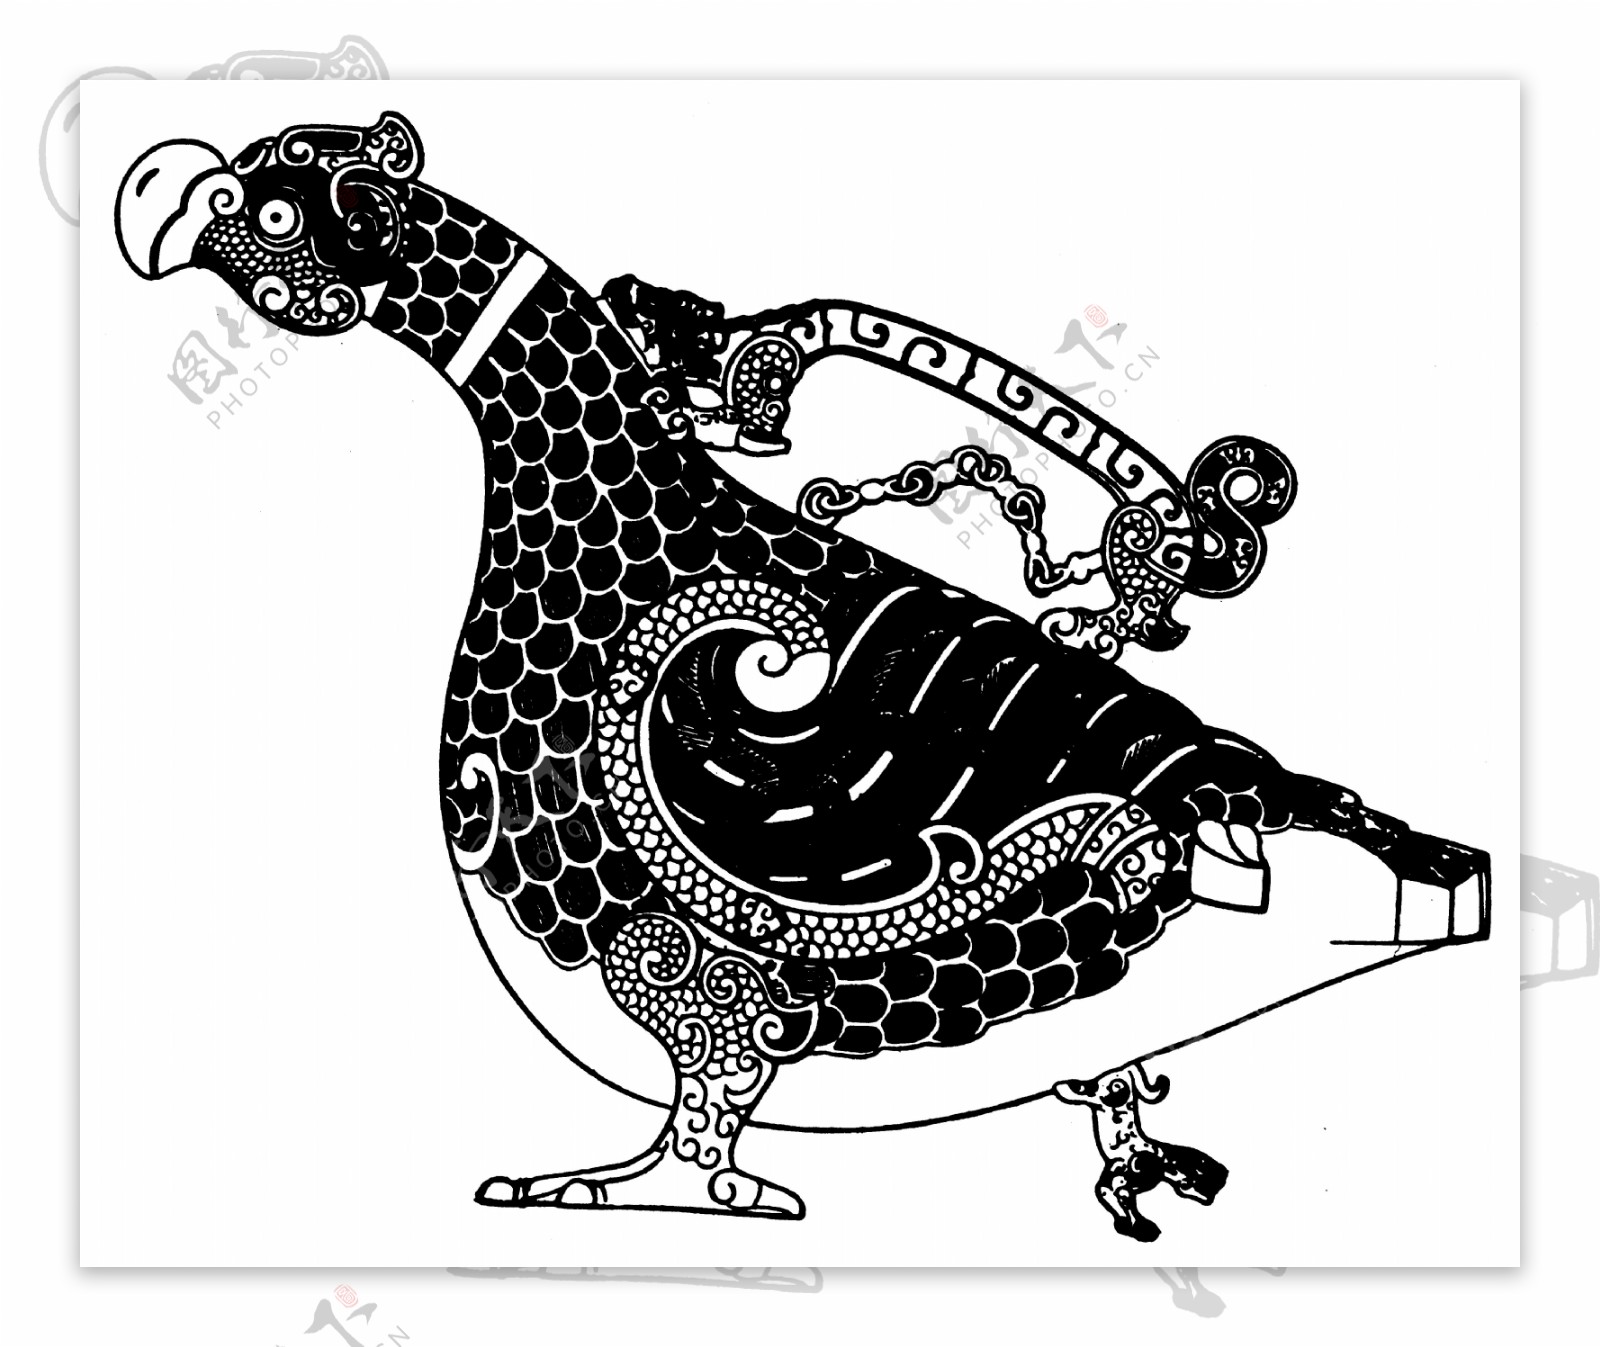 春秋战国图案青铜器图案中国传统图案017